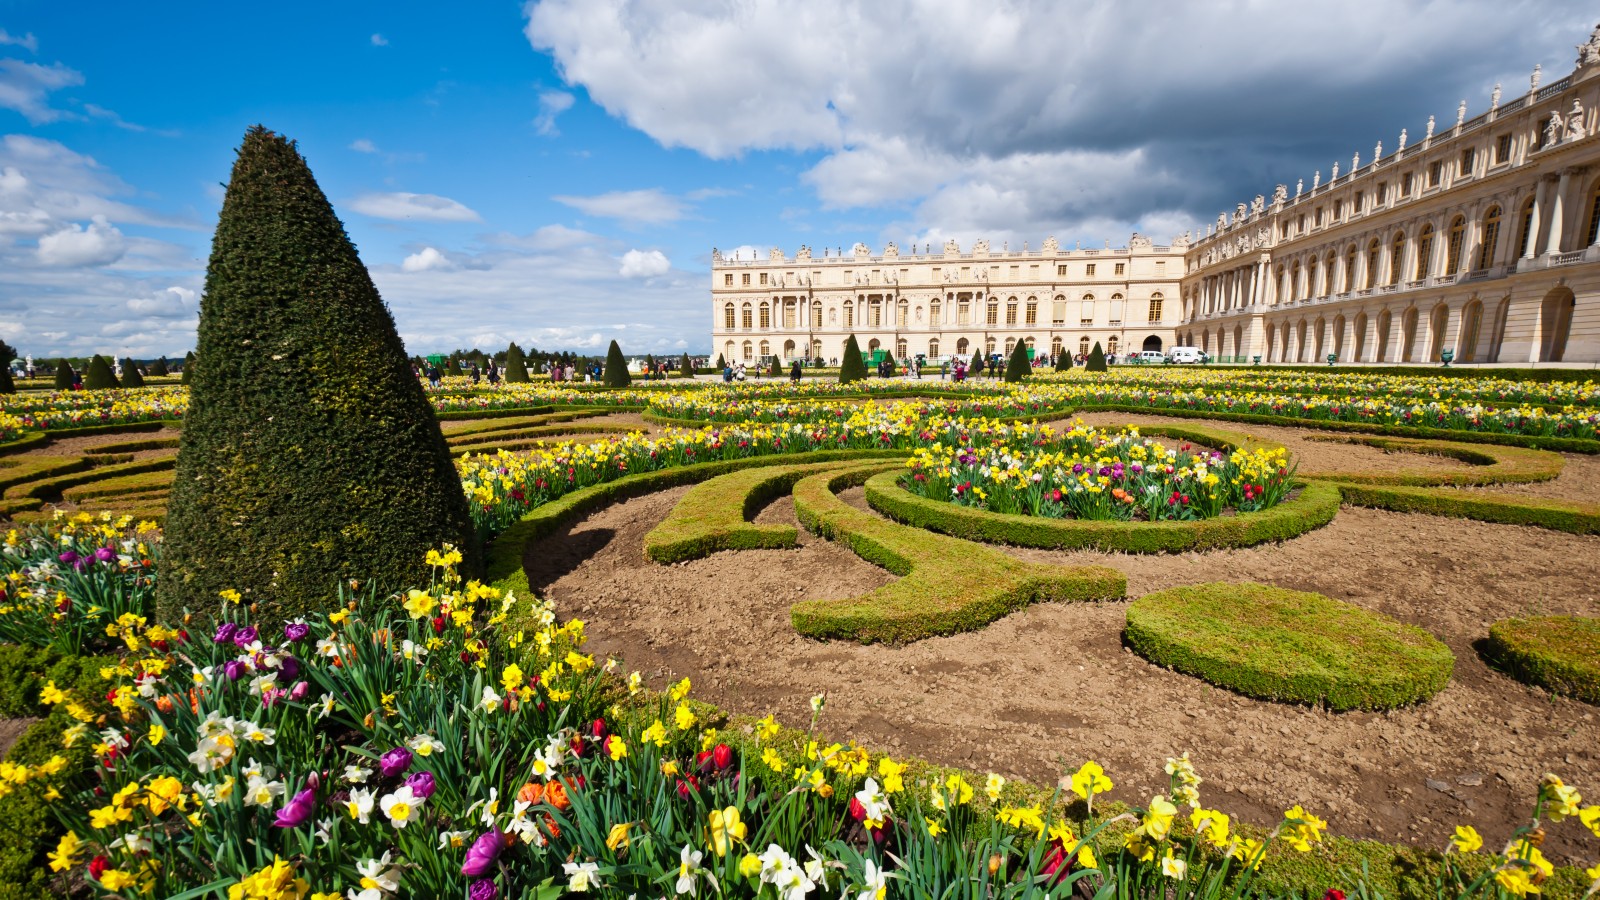 Garden of Palace of Versailles (Chateau de Versailles) in Paris, France